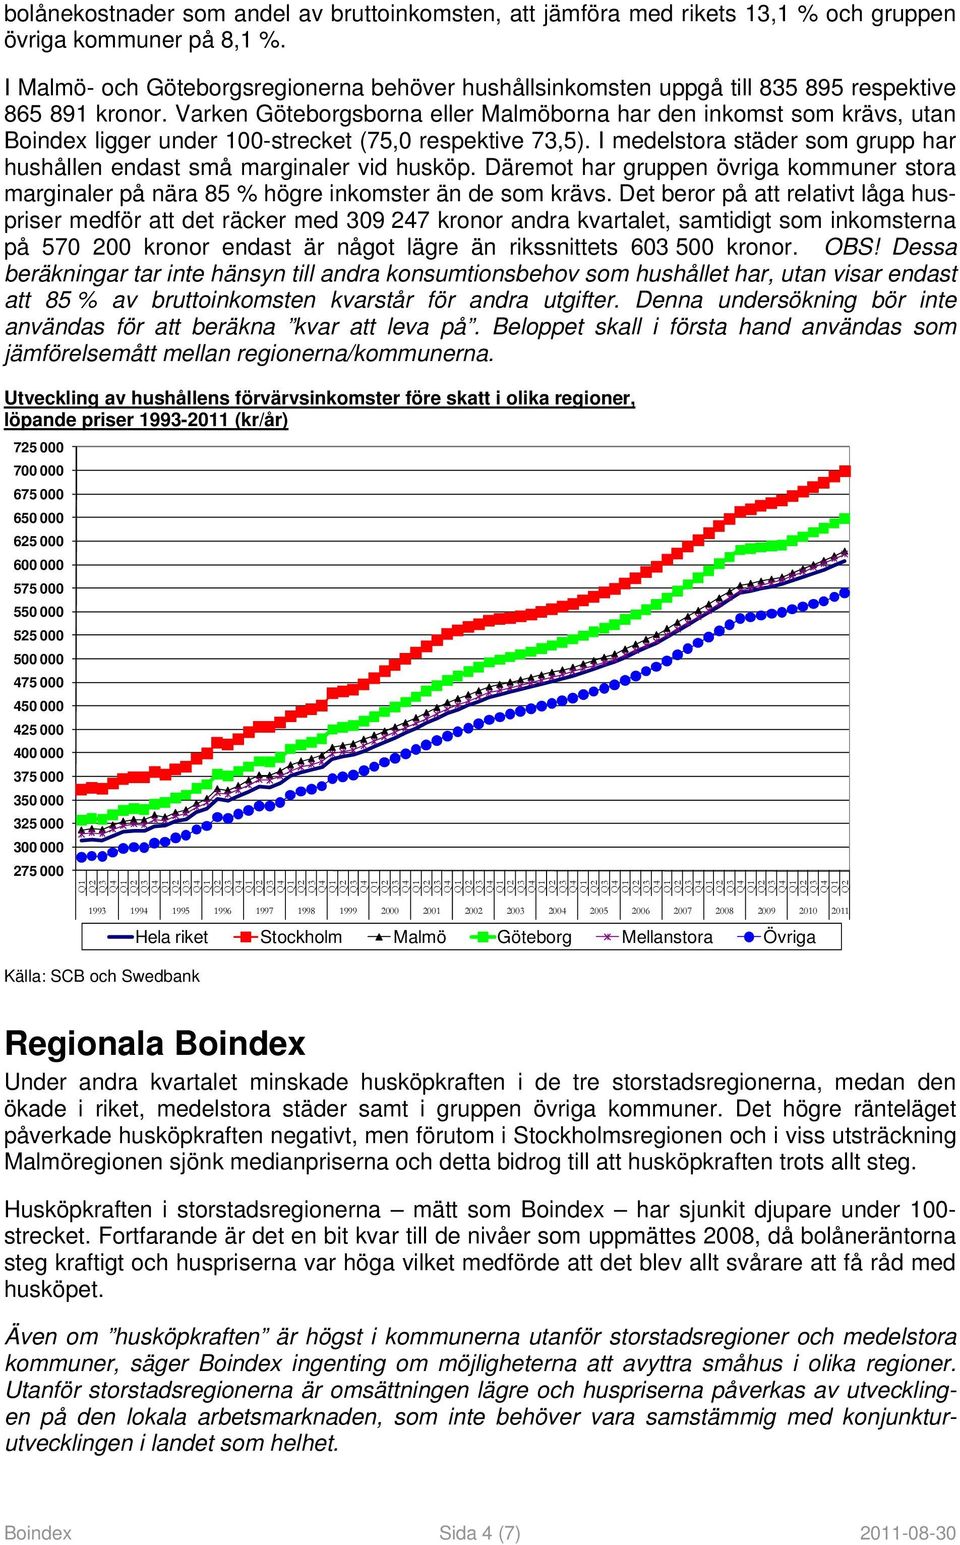 Varken Göteborgsborna eller Malmöborna har den inkomst som krävs, utan Boindex ligger under 100-strecket (75,0 respektive 73,5).